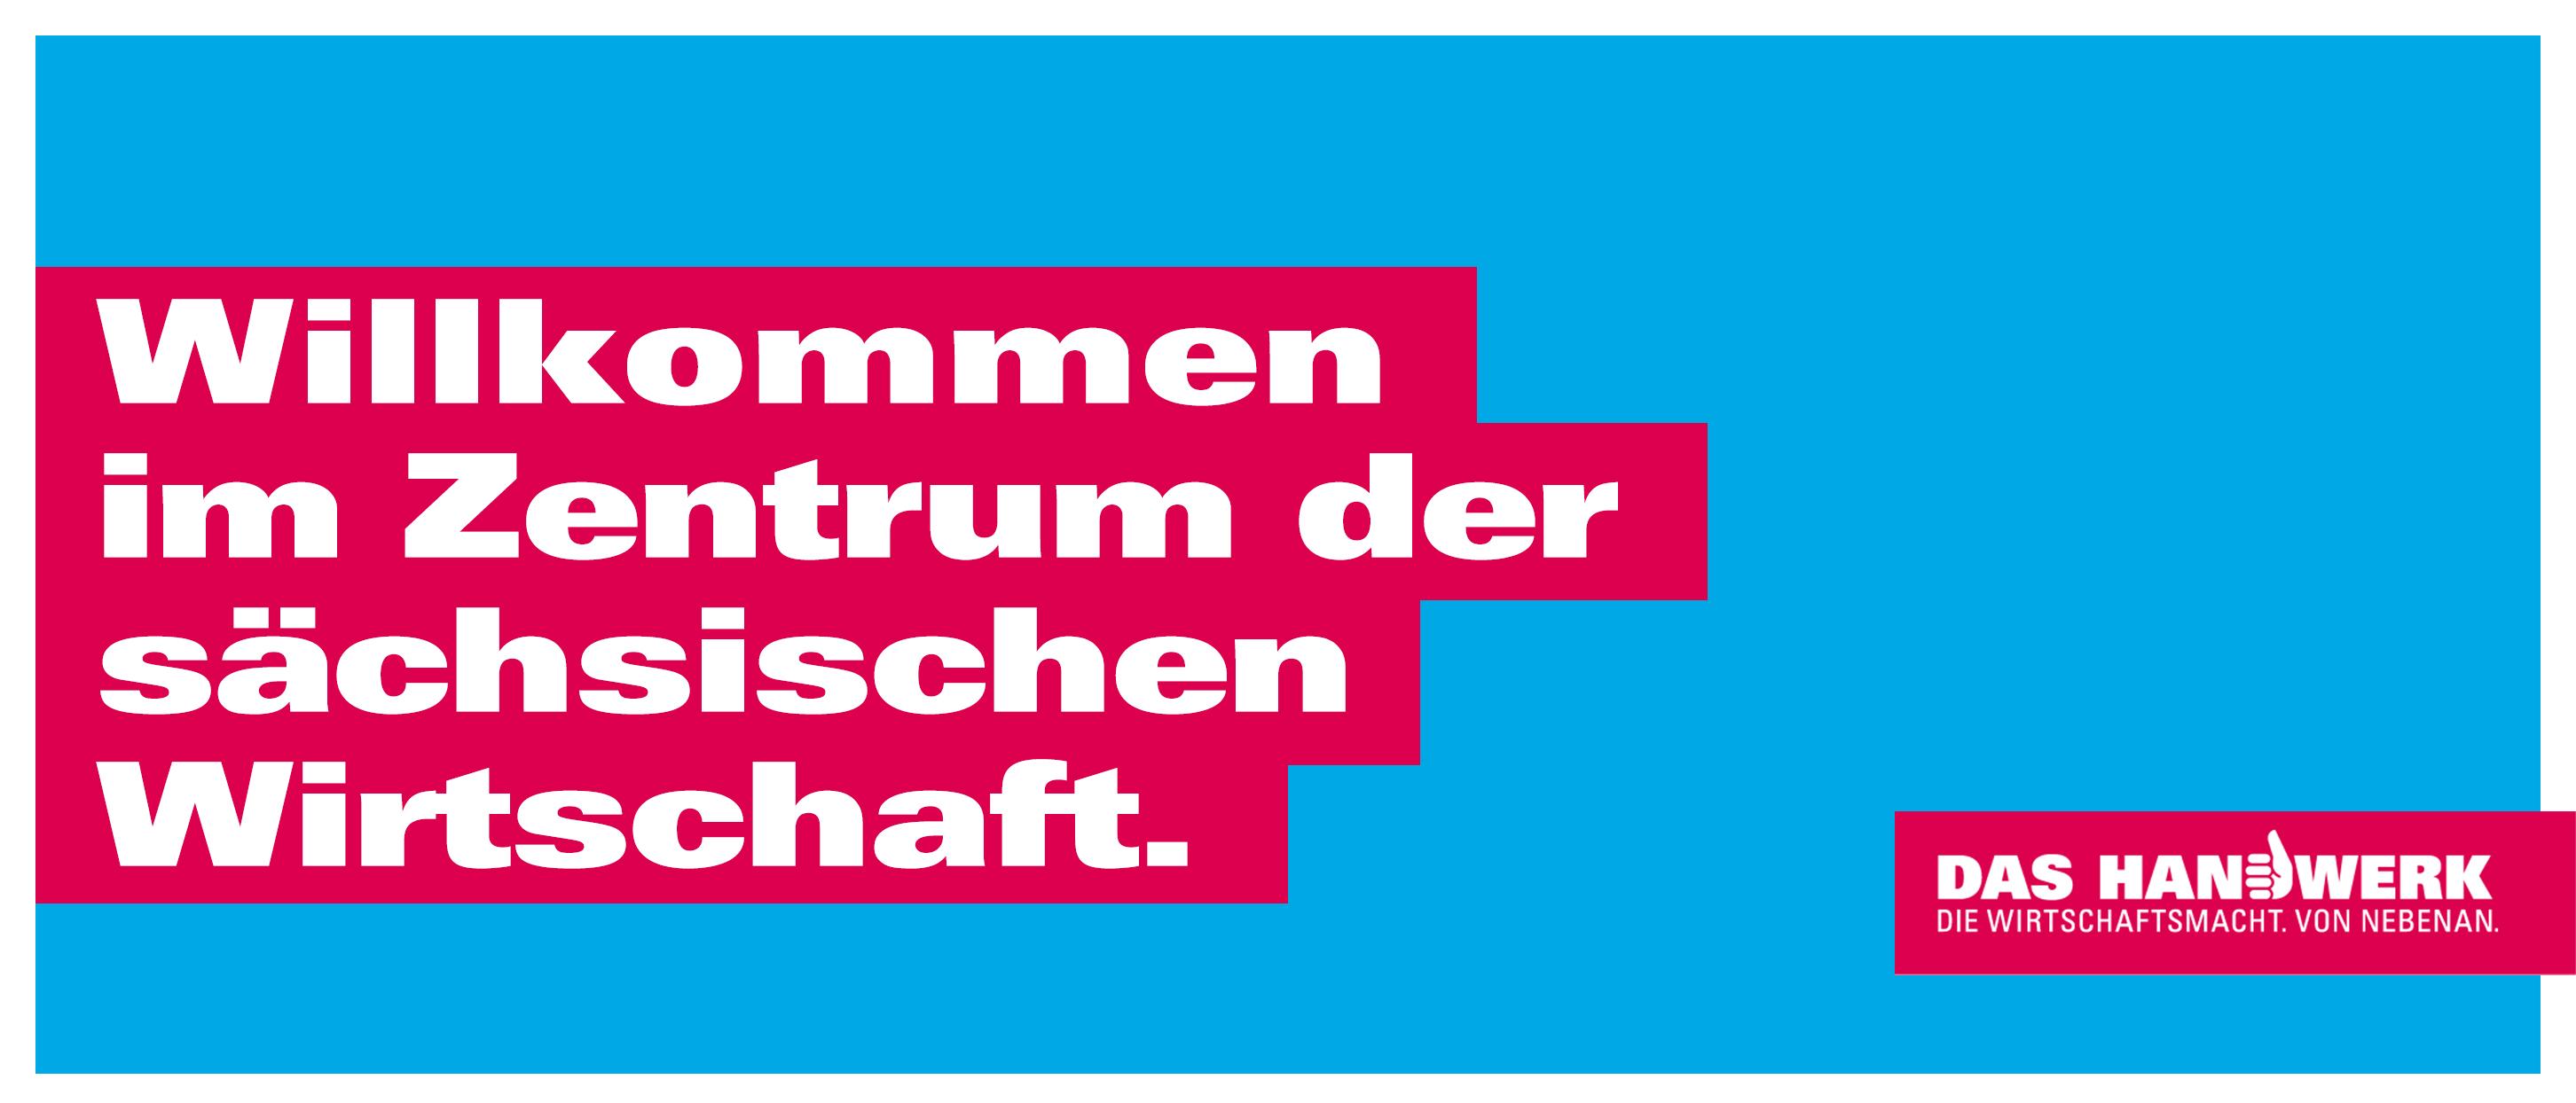 Hellblauer Hintergrund mit weißer Schrift auf rotem Hintergrund \"Willkommen  im Zentrum der sächsischen Wirtschaft.\"